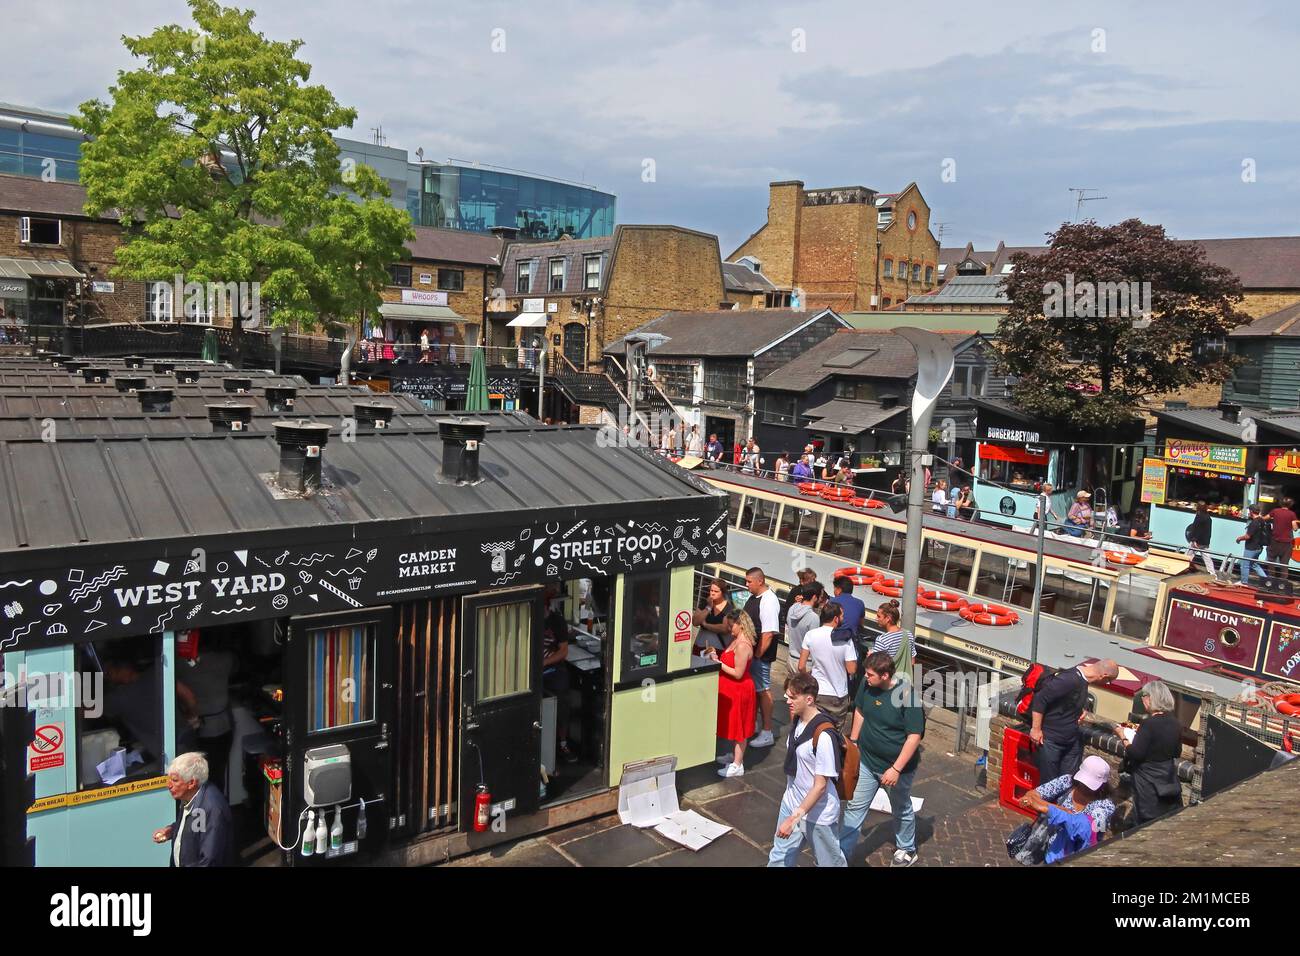 West Yard aux écluses de Camden, canal, bateaux et marché, Lock place, Camden, Londres, Angleterre, Royaume-Uni, NW1 8AF Banque D'Images